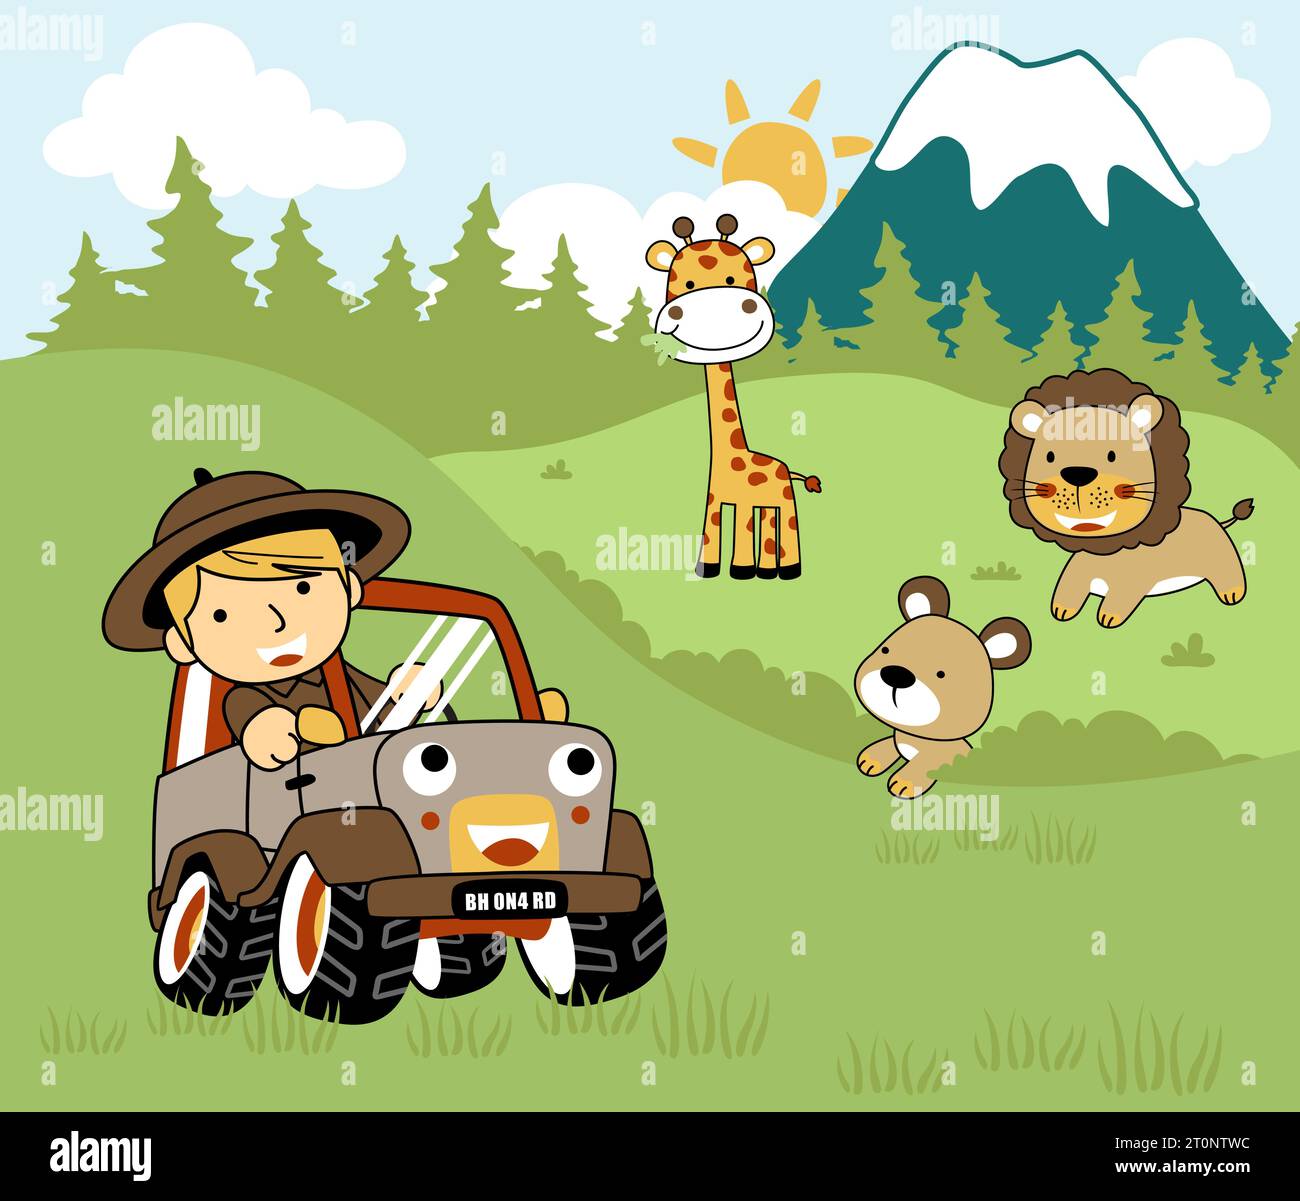 Kleiner Junge auf dem Auto im Safaripark mit freundlichen Tieren, Vektor-Zeichentrickillustration Stock Vektor